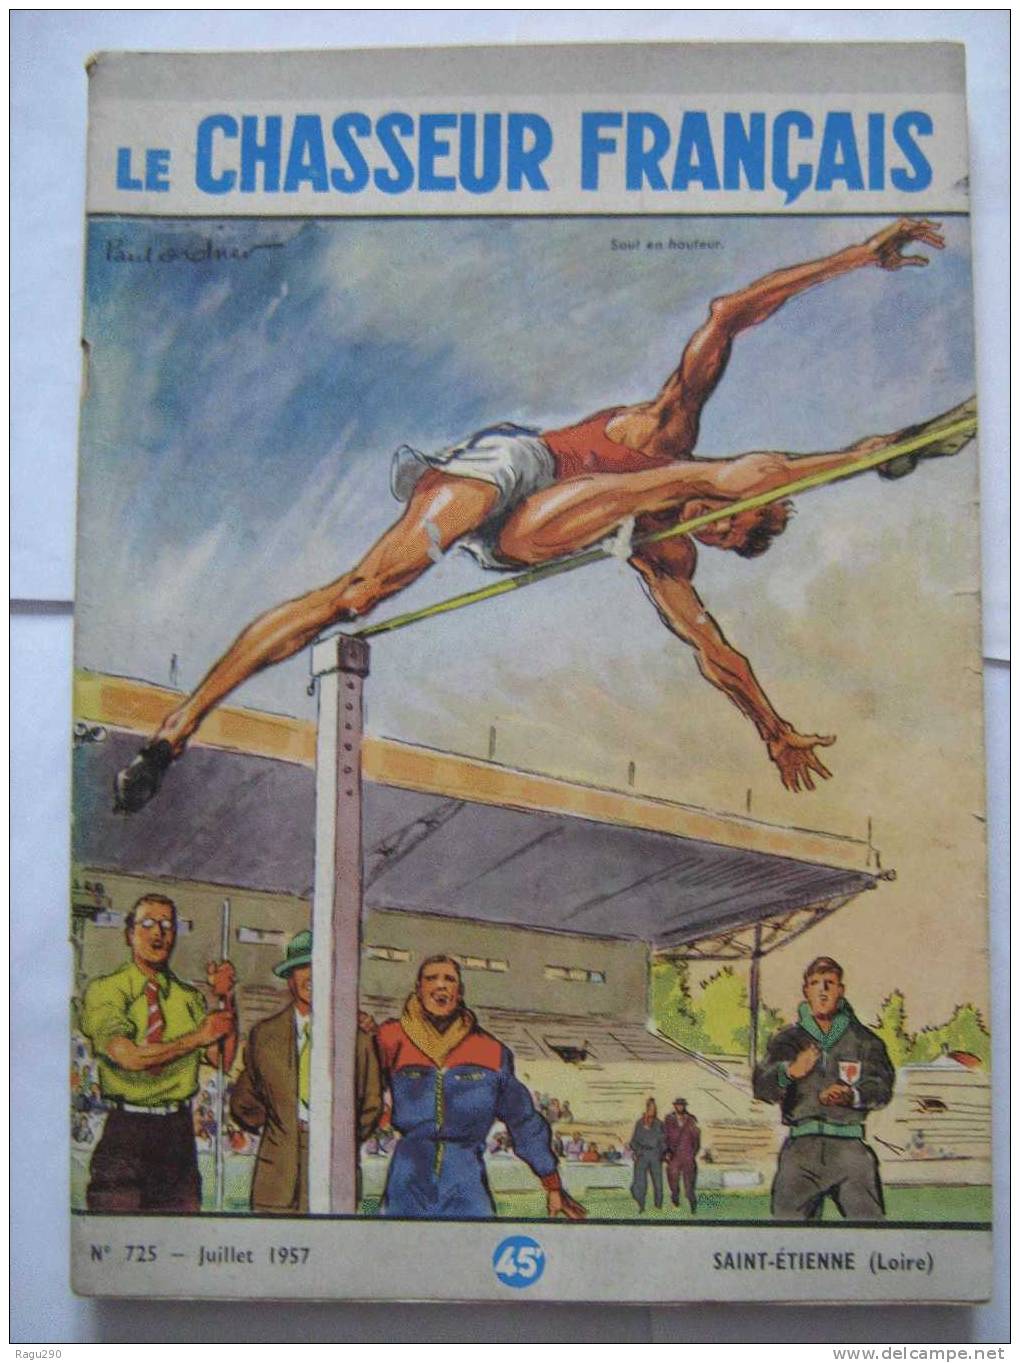 LE CHASSEUR FRANCAIS N° 725 Illustré Par  PAUL ORDNER -- Saut En Hauteur  -- Juillet 1957 - Caccia & Pesca